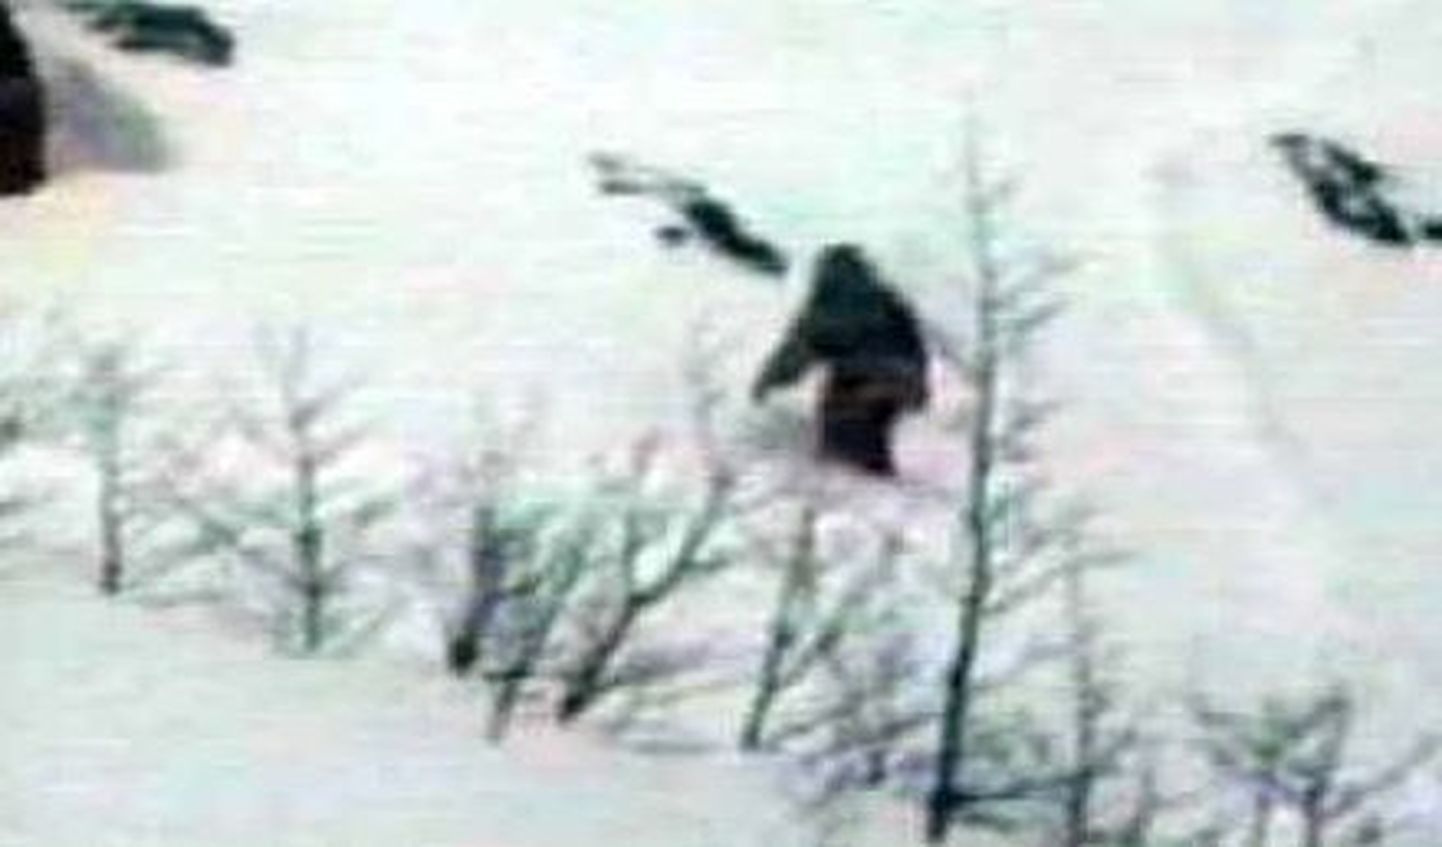 Jaapanlaste sõnul õnnestus neil 2003. aastal lumeinimest kaugelt filmida. Sellel aastal leidsid nad lumeinimese jäljed